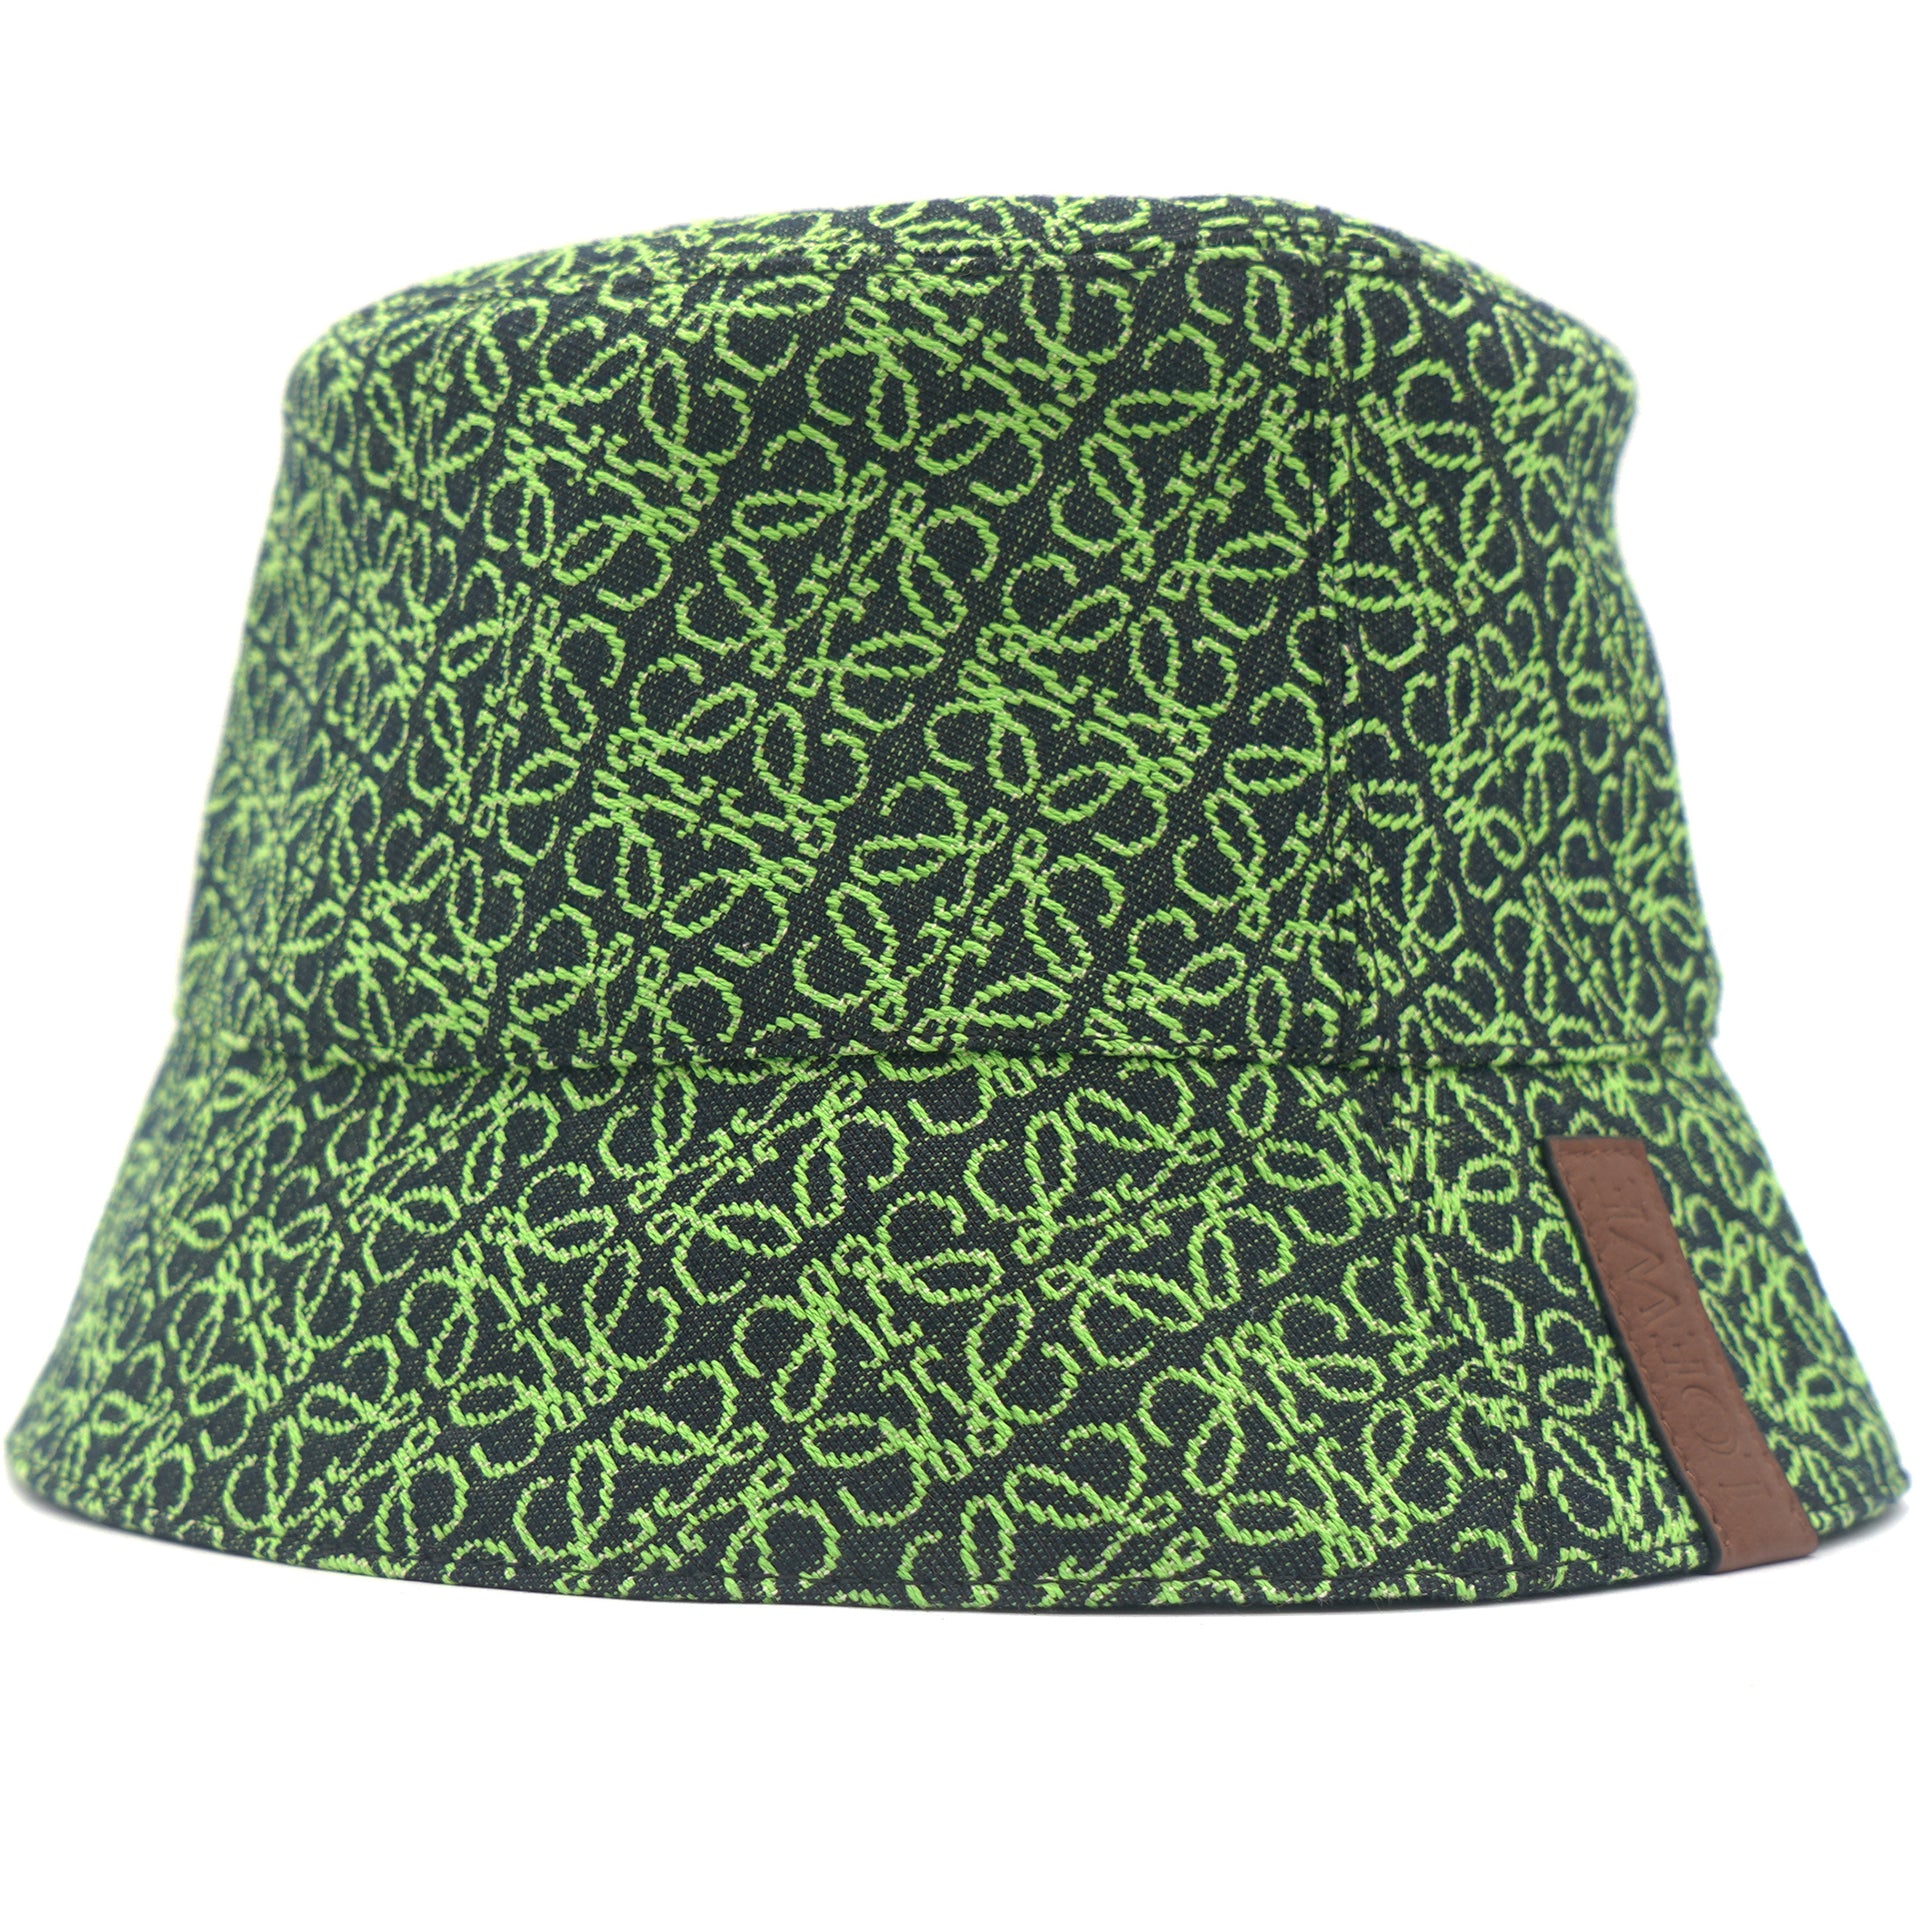 Anagram Bucket Hat in Multicoloured - Loewe